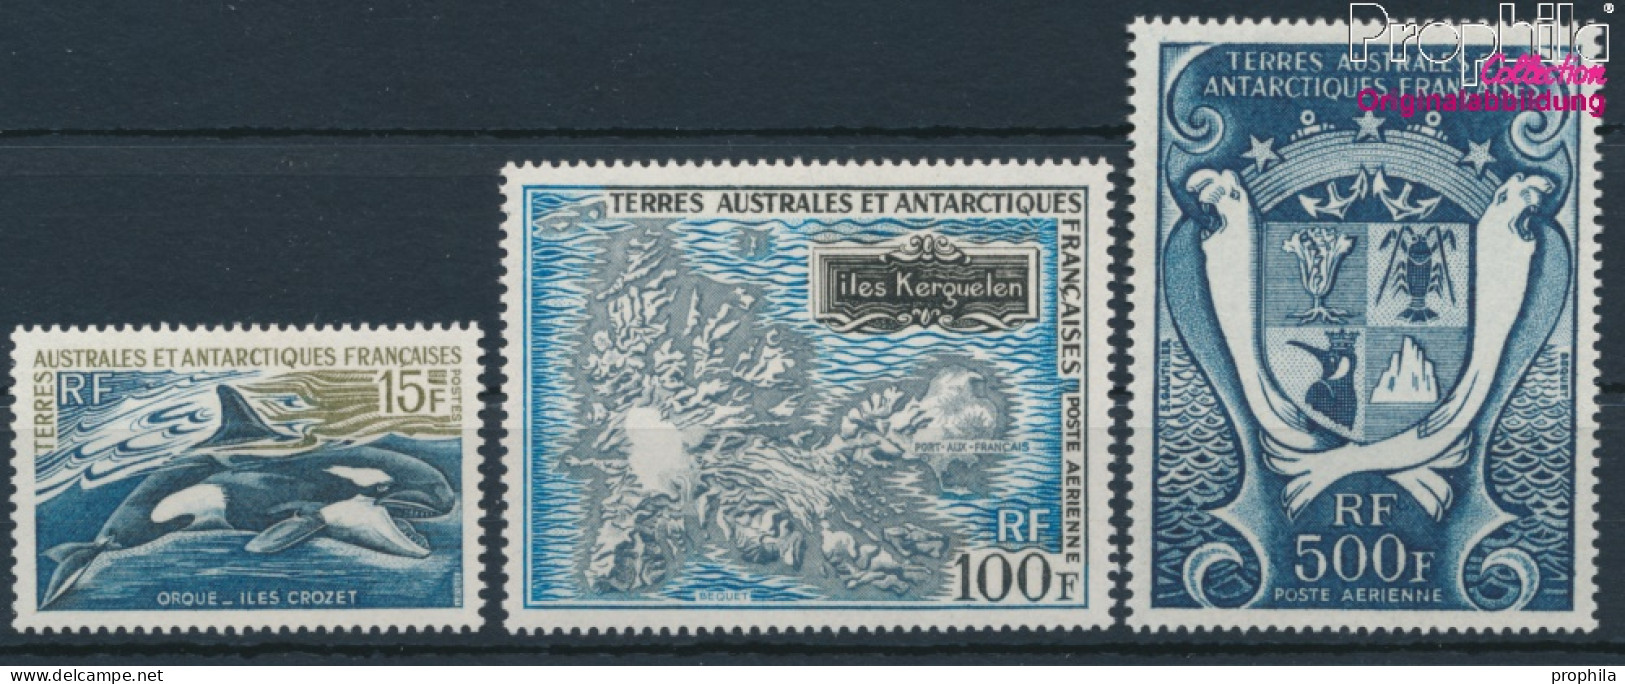 Französ. Gebiete Antarktis 52-54 (kompl.Ausg.) Postfrisch 1969 Freimarken (10174630 - Neufs